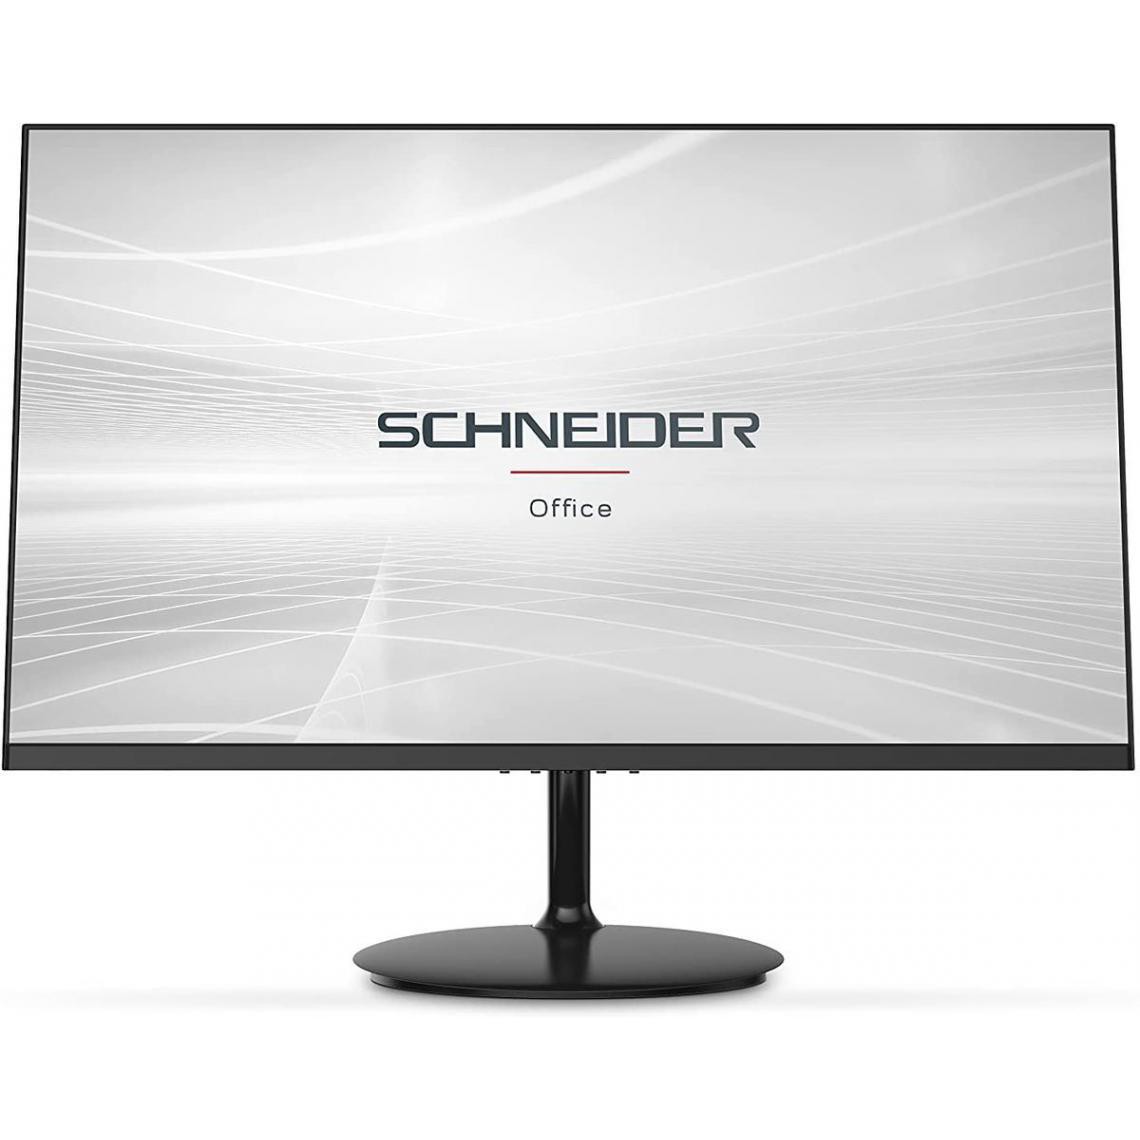 Schneider - 24" LED SC24-M1F - Moniteur PC